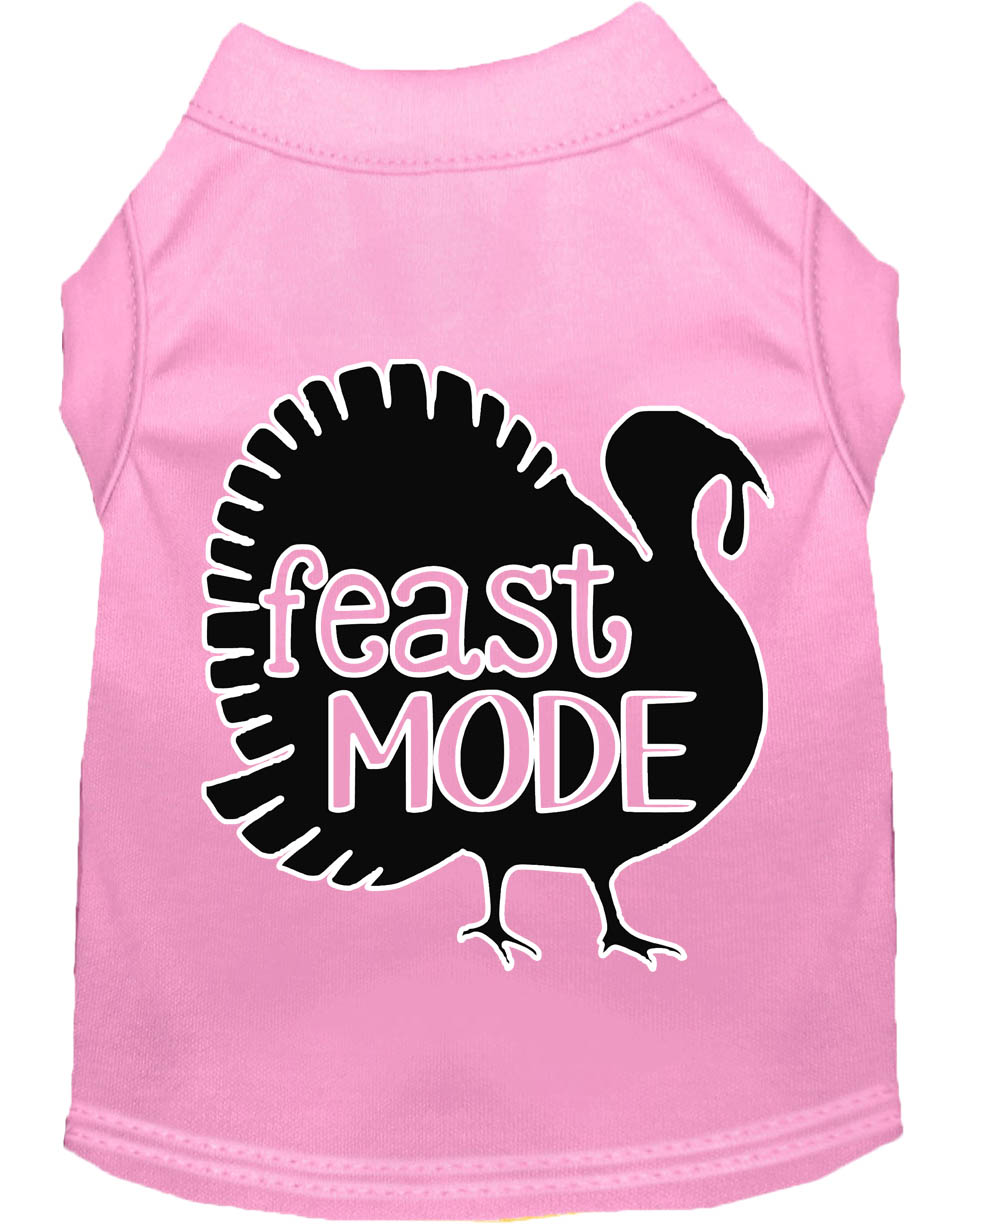 Feast Mode Screen Print Dog Shirt Light Pink Med